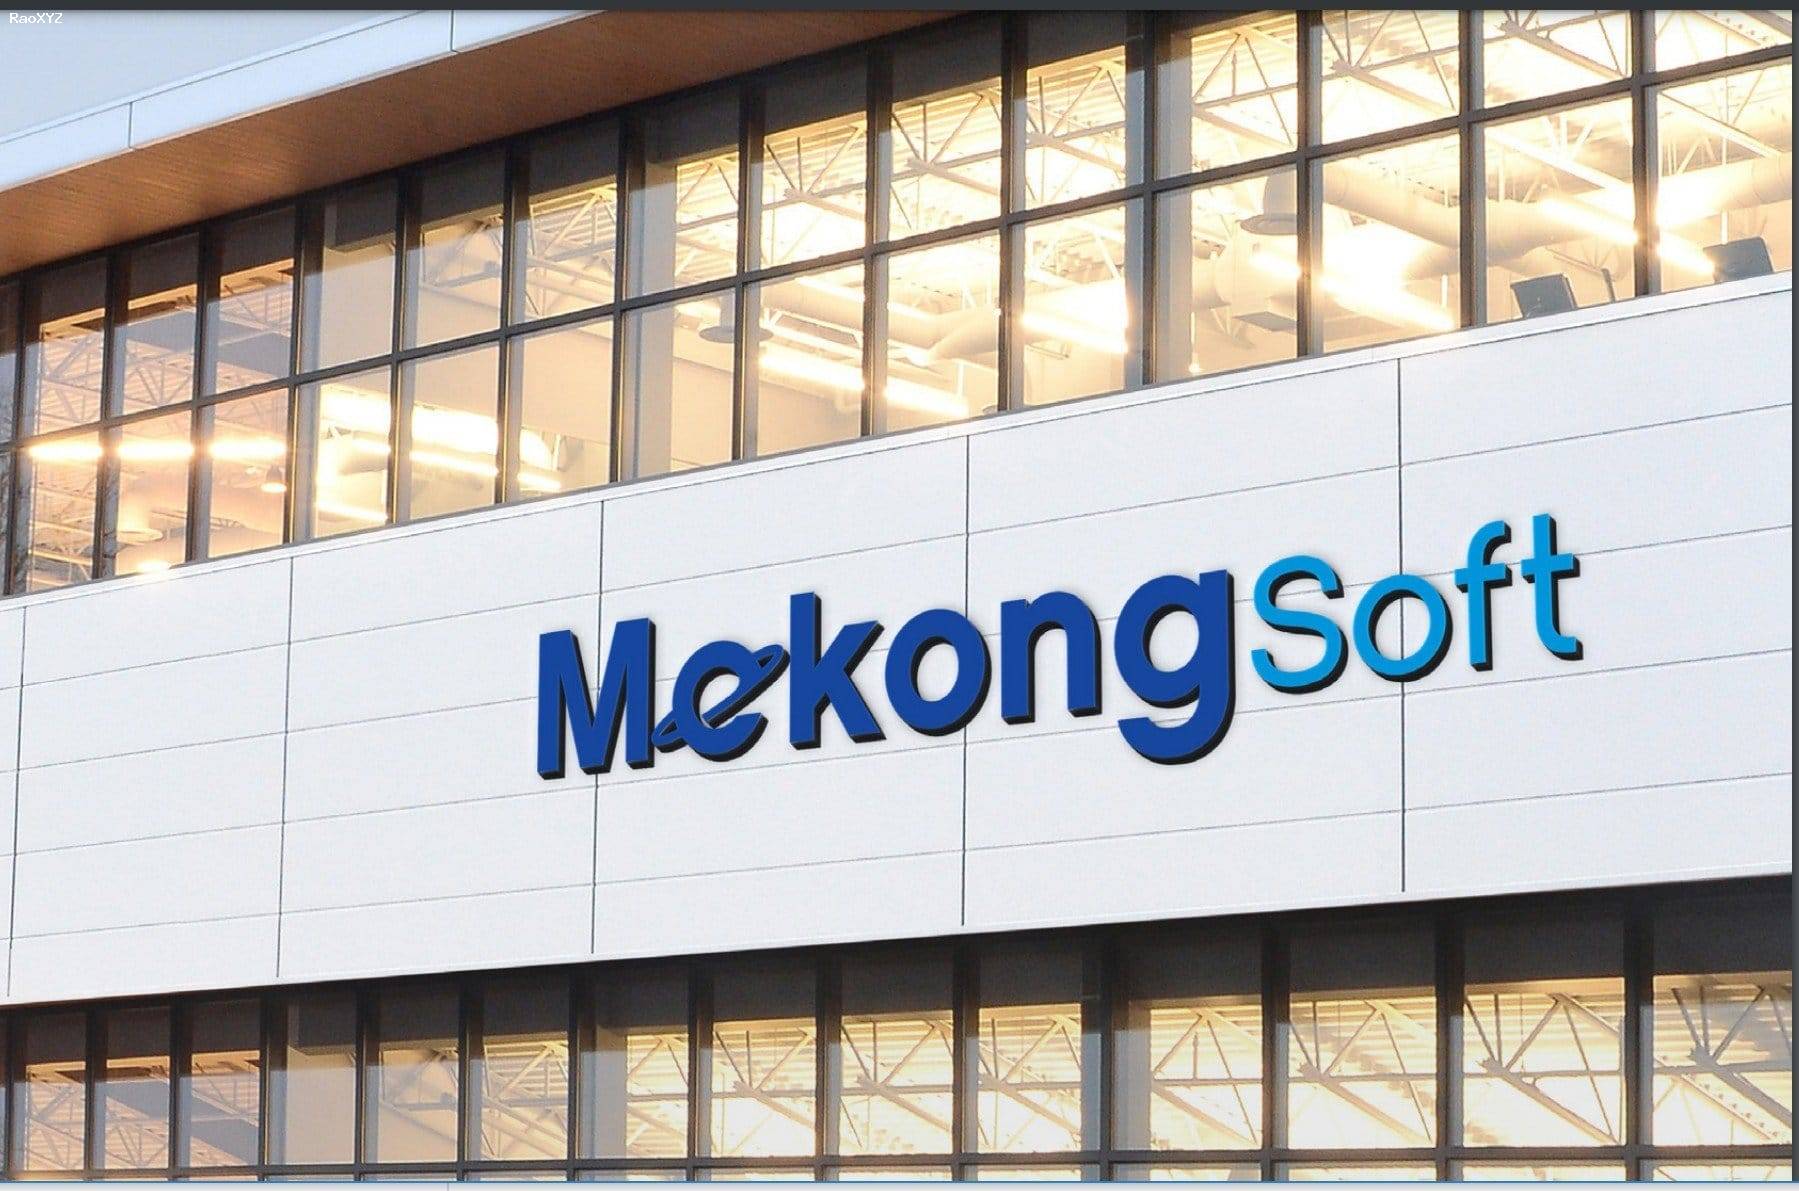 Phần mềm quản lý sản xuất may mặc MekongSoft 3003H